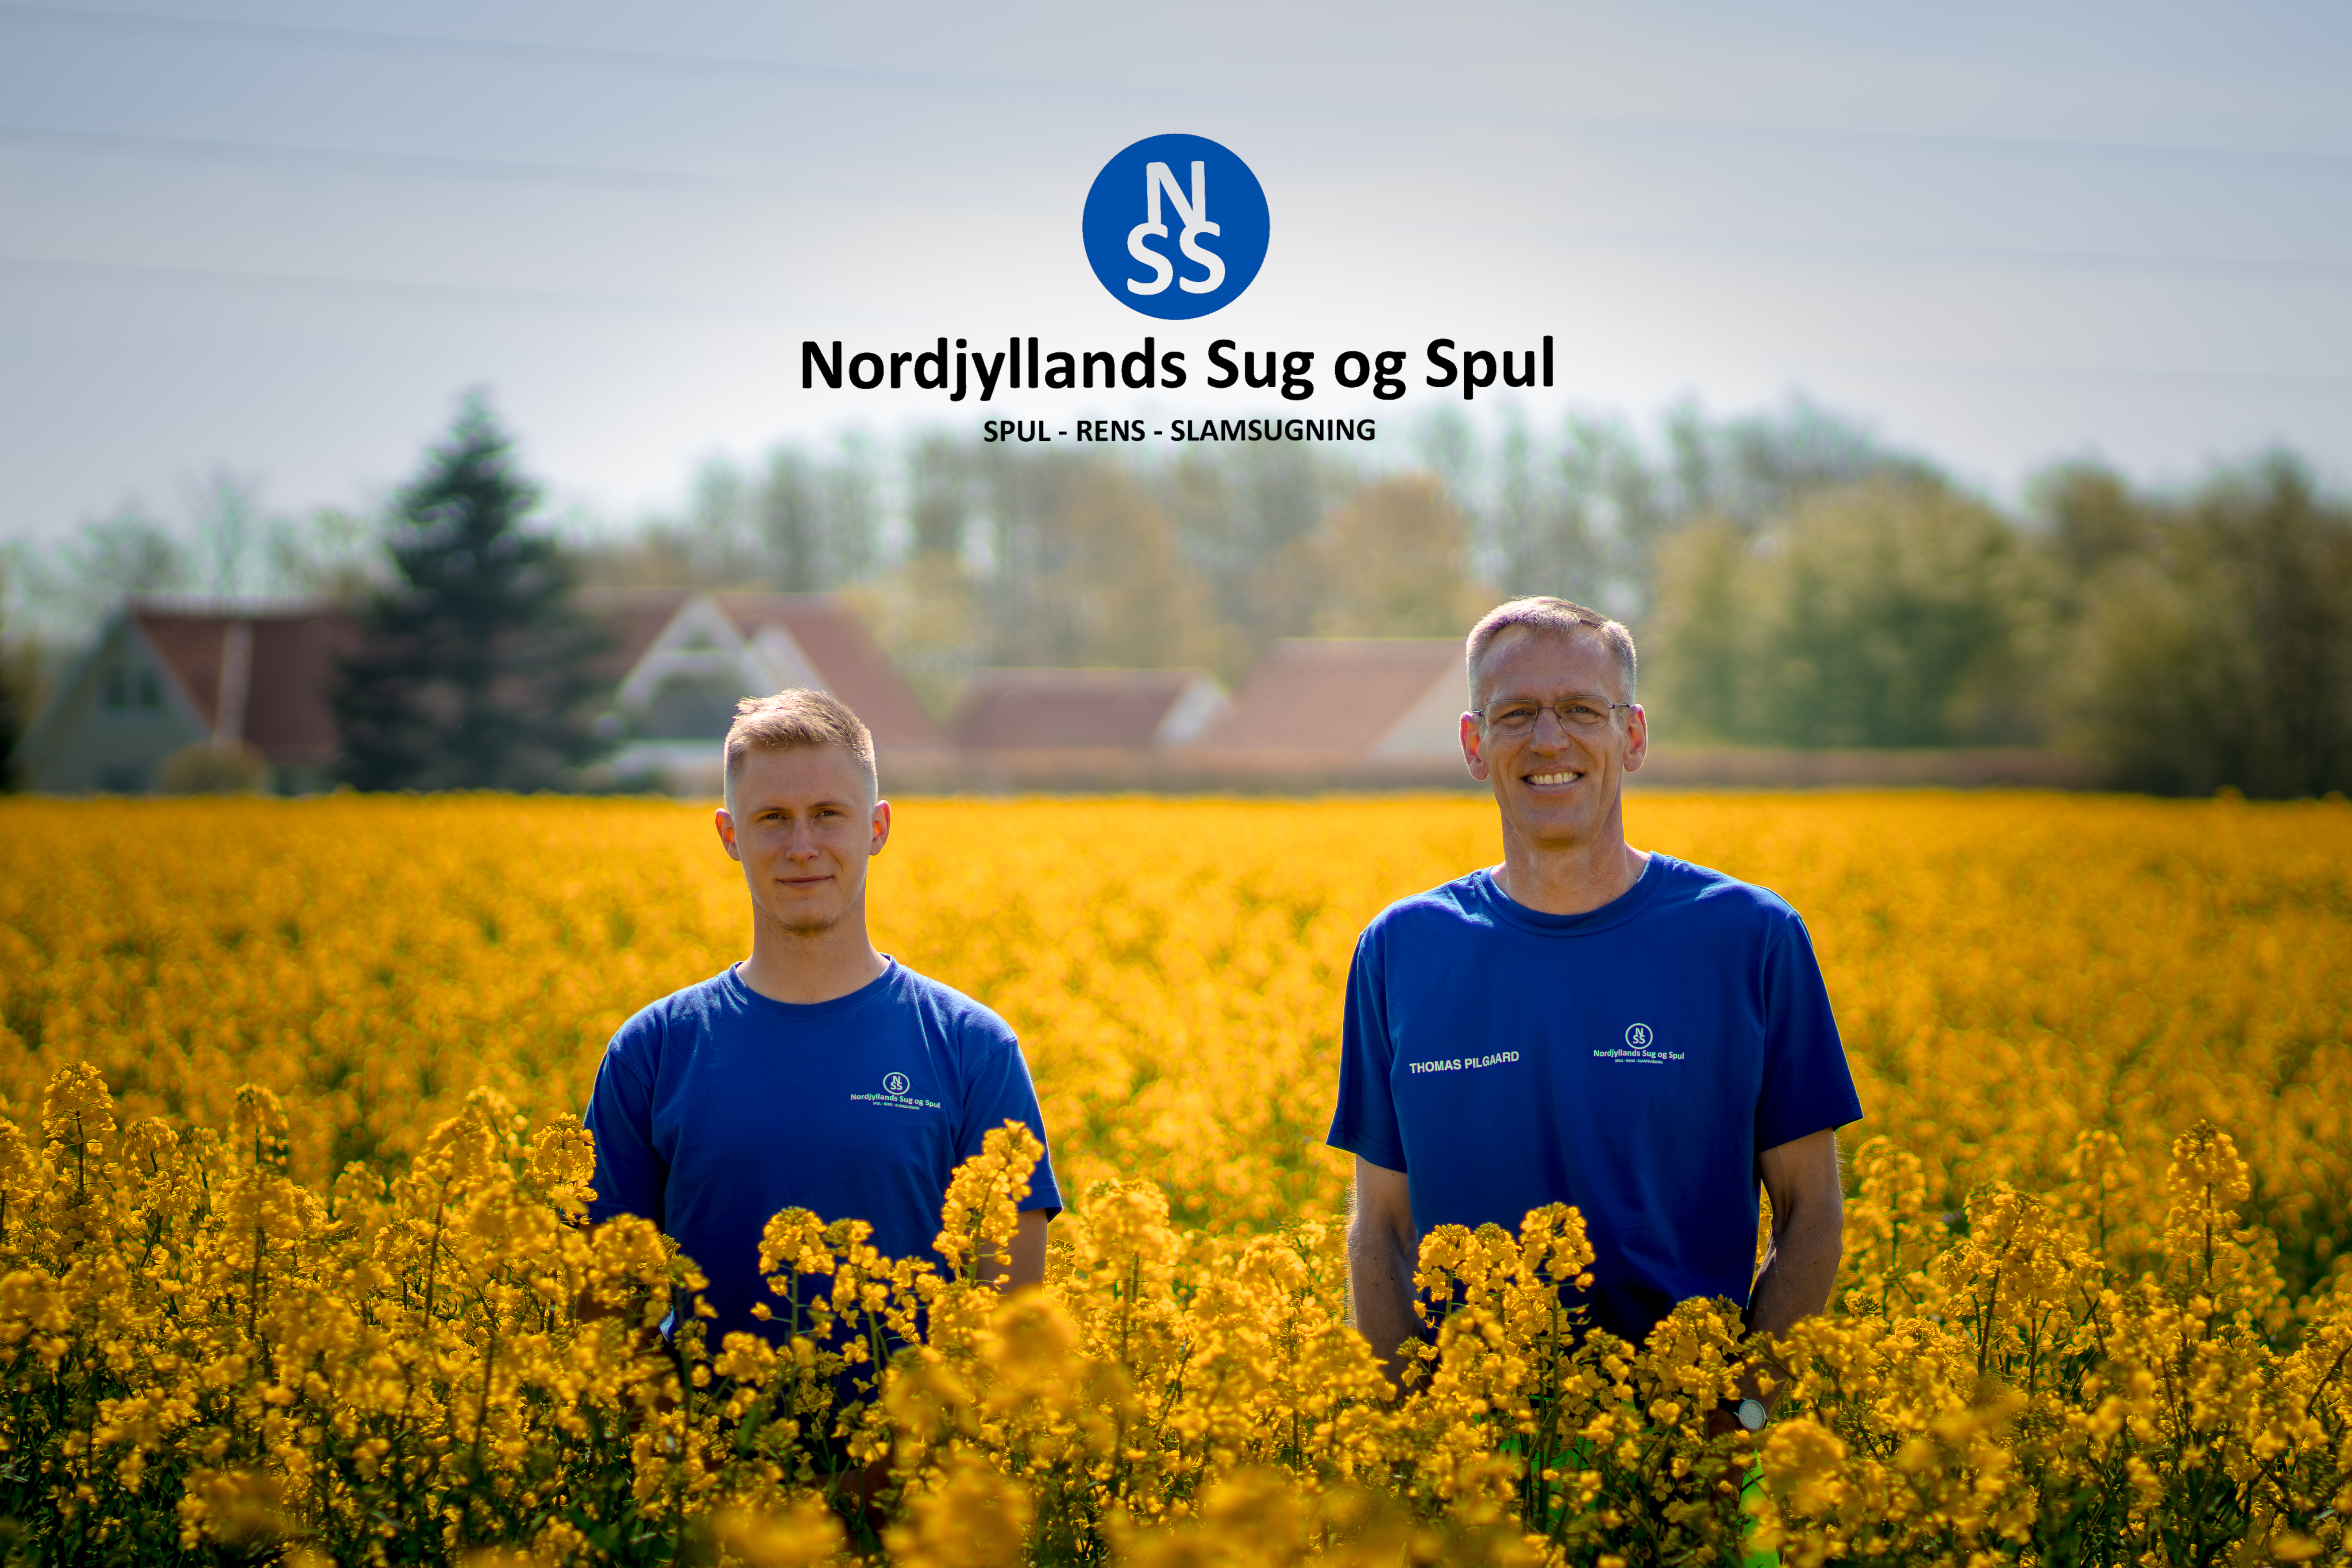 Nordjyllands sug og spul